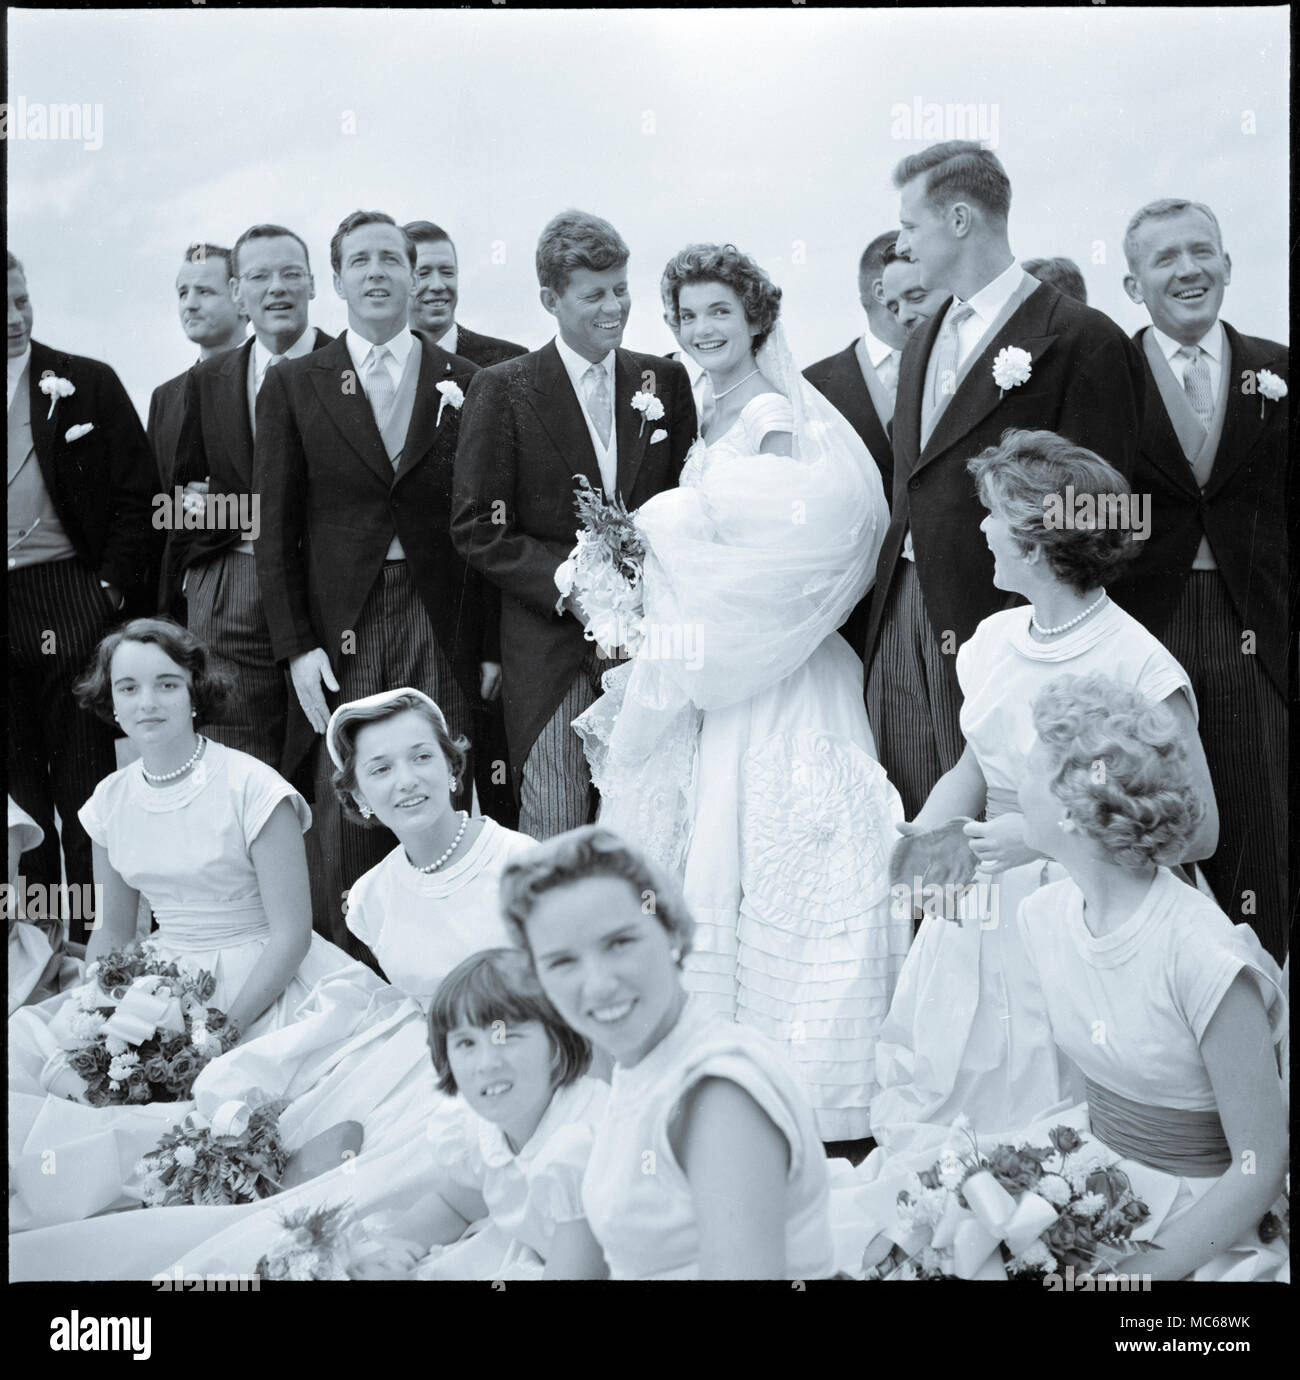 Jackie Bouvier Kennedy et John F. Kennedy, dans une tenue de mariage, avec des membres de leur fête de mariage - Septembre 12, 1953 Banque D'Images